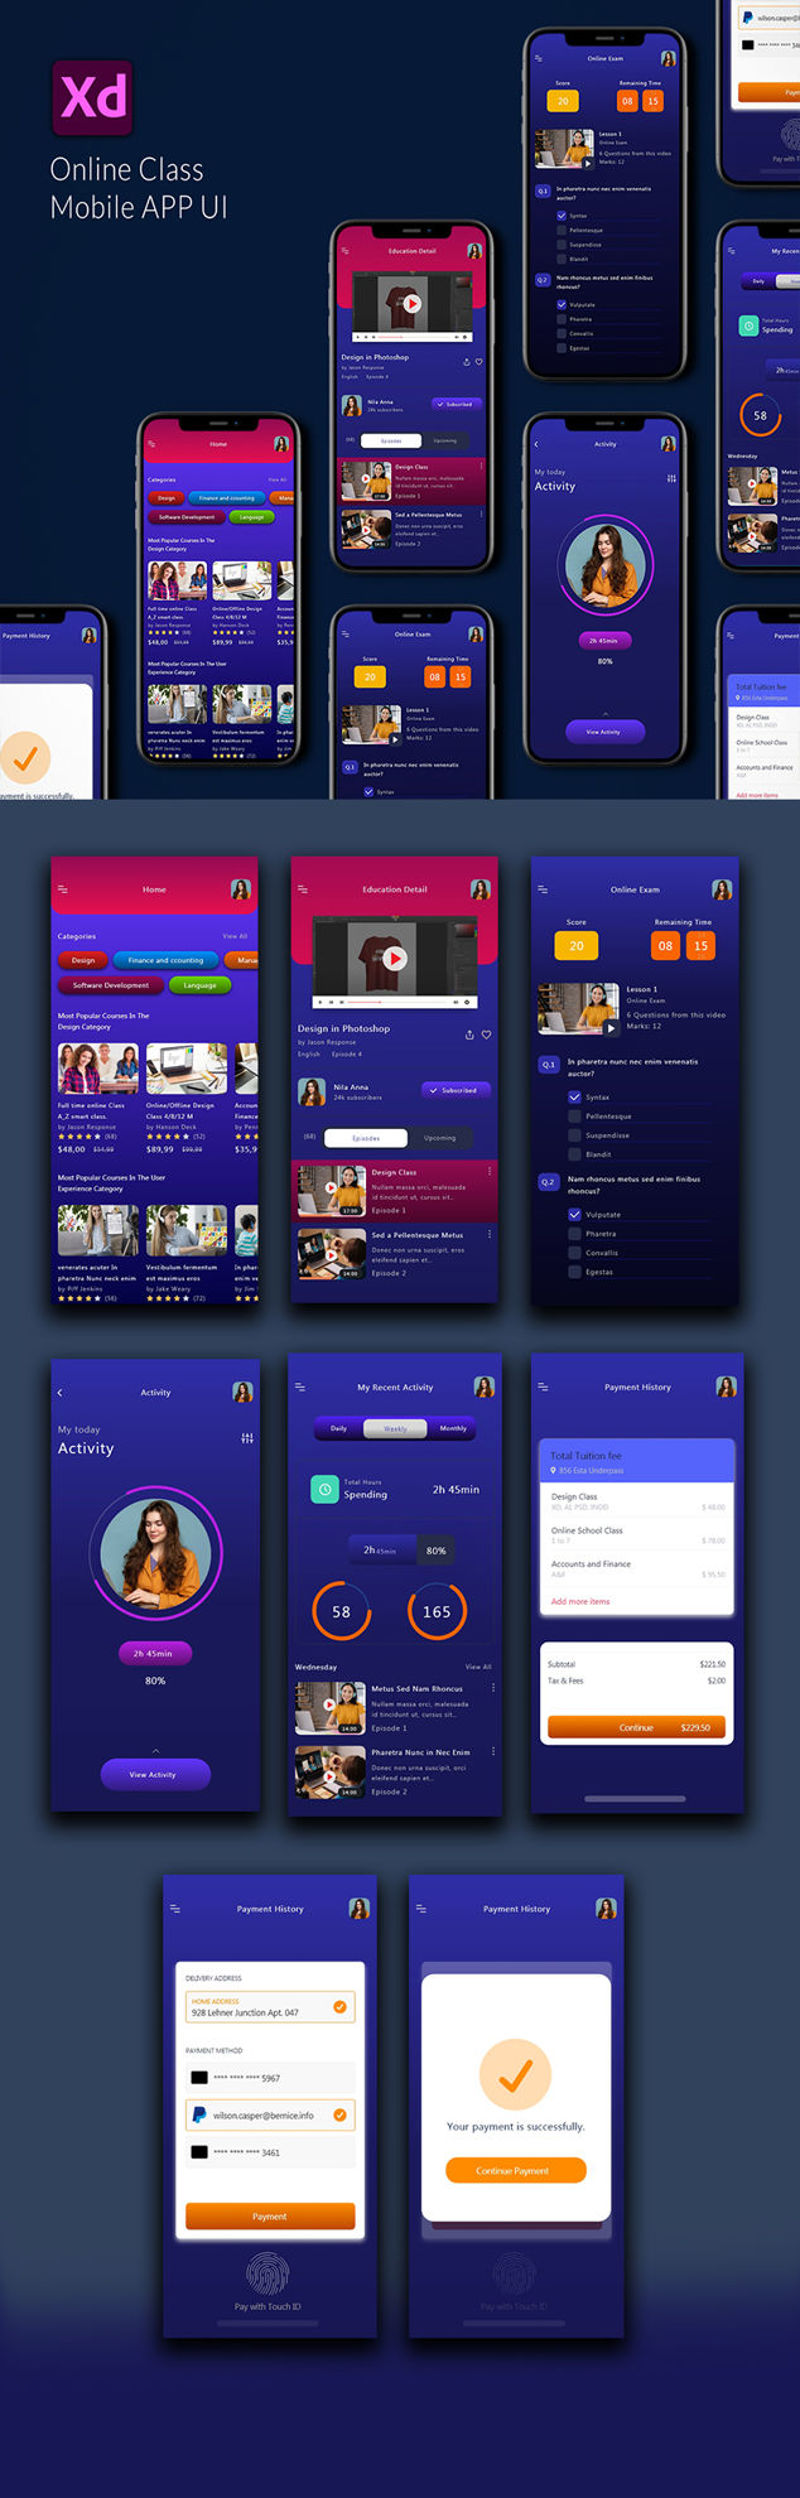 Interfaccia utente dell'app mobile di classe online